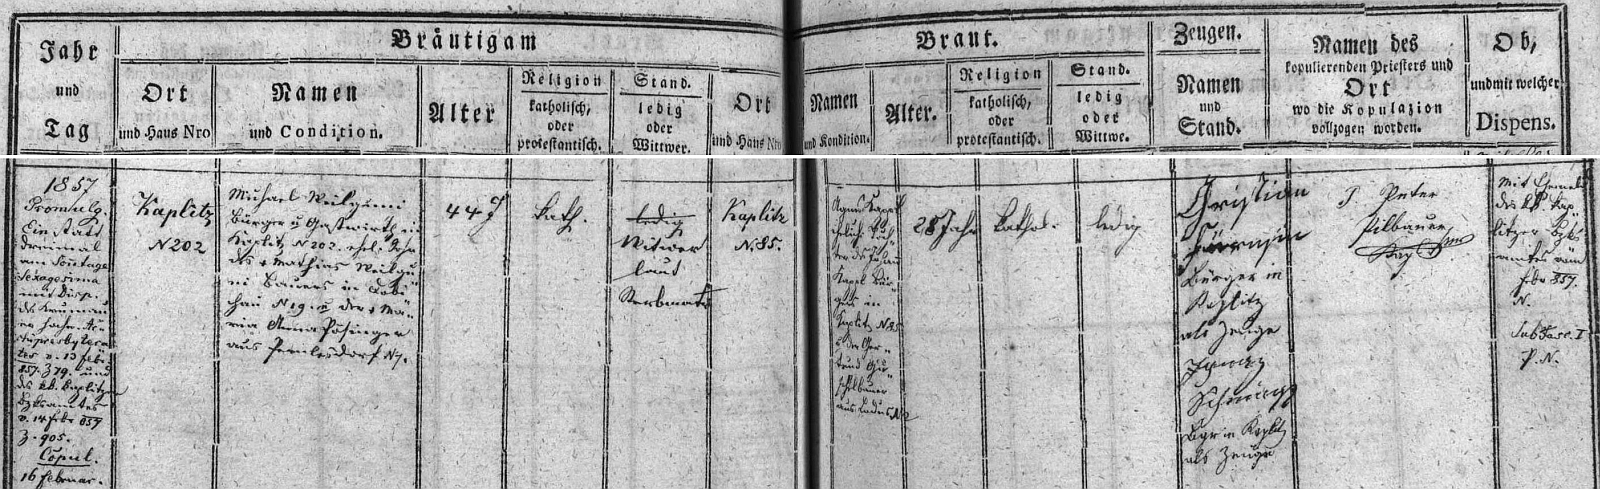 Záznam kaplické oddací matriky o tamní svatbě matčiných rodičů 16. února roku 1857